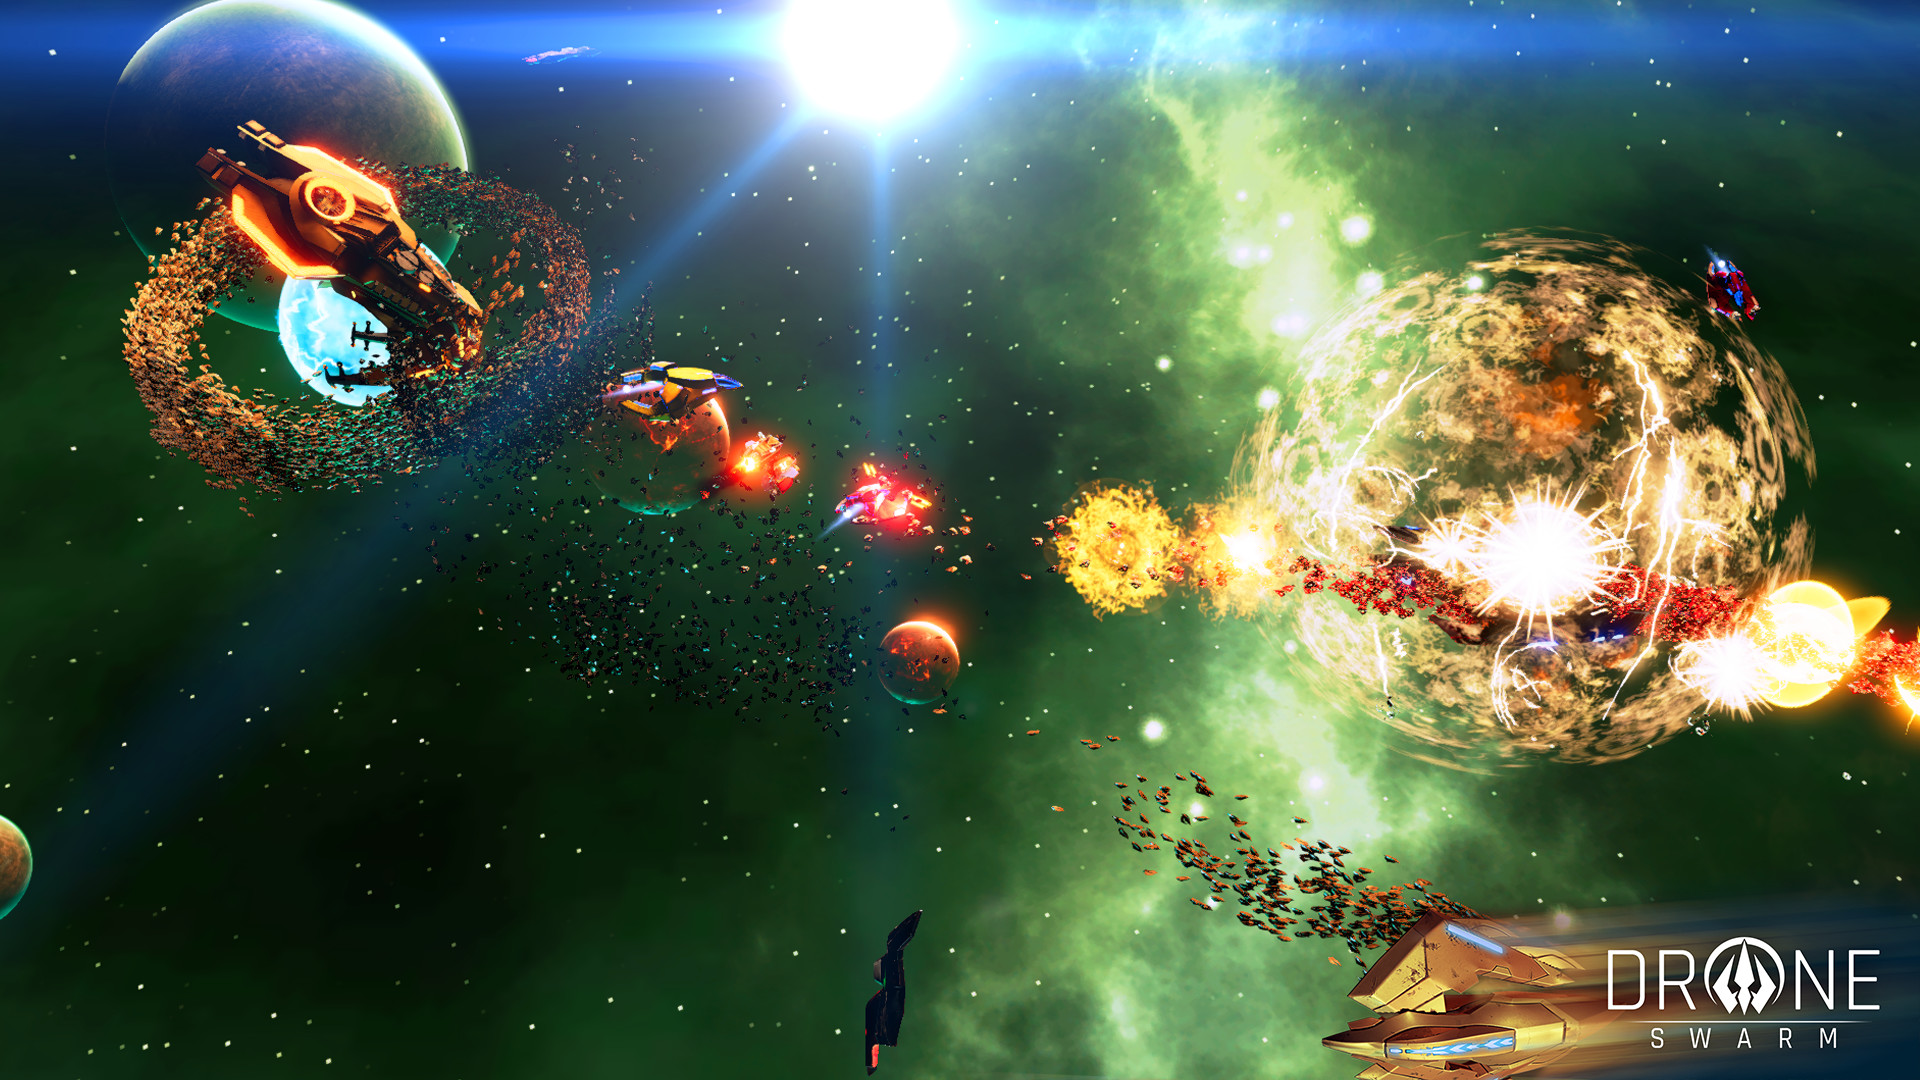 太空策略游戏《雄蜂战机》实机演示 10月20日发售